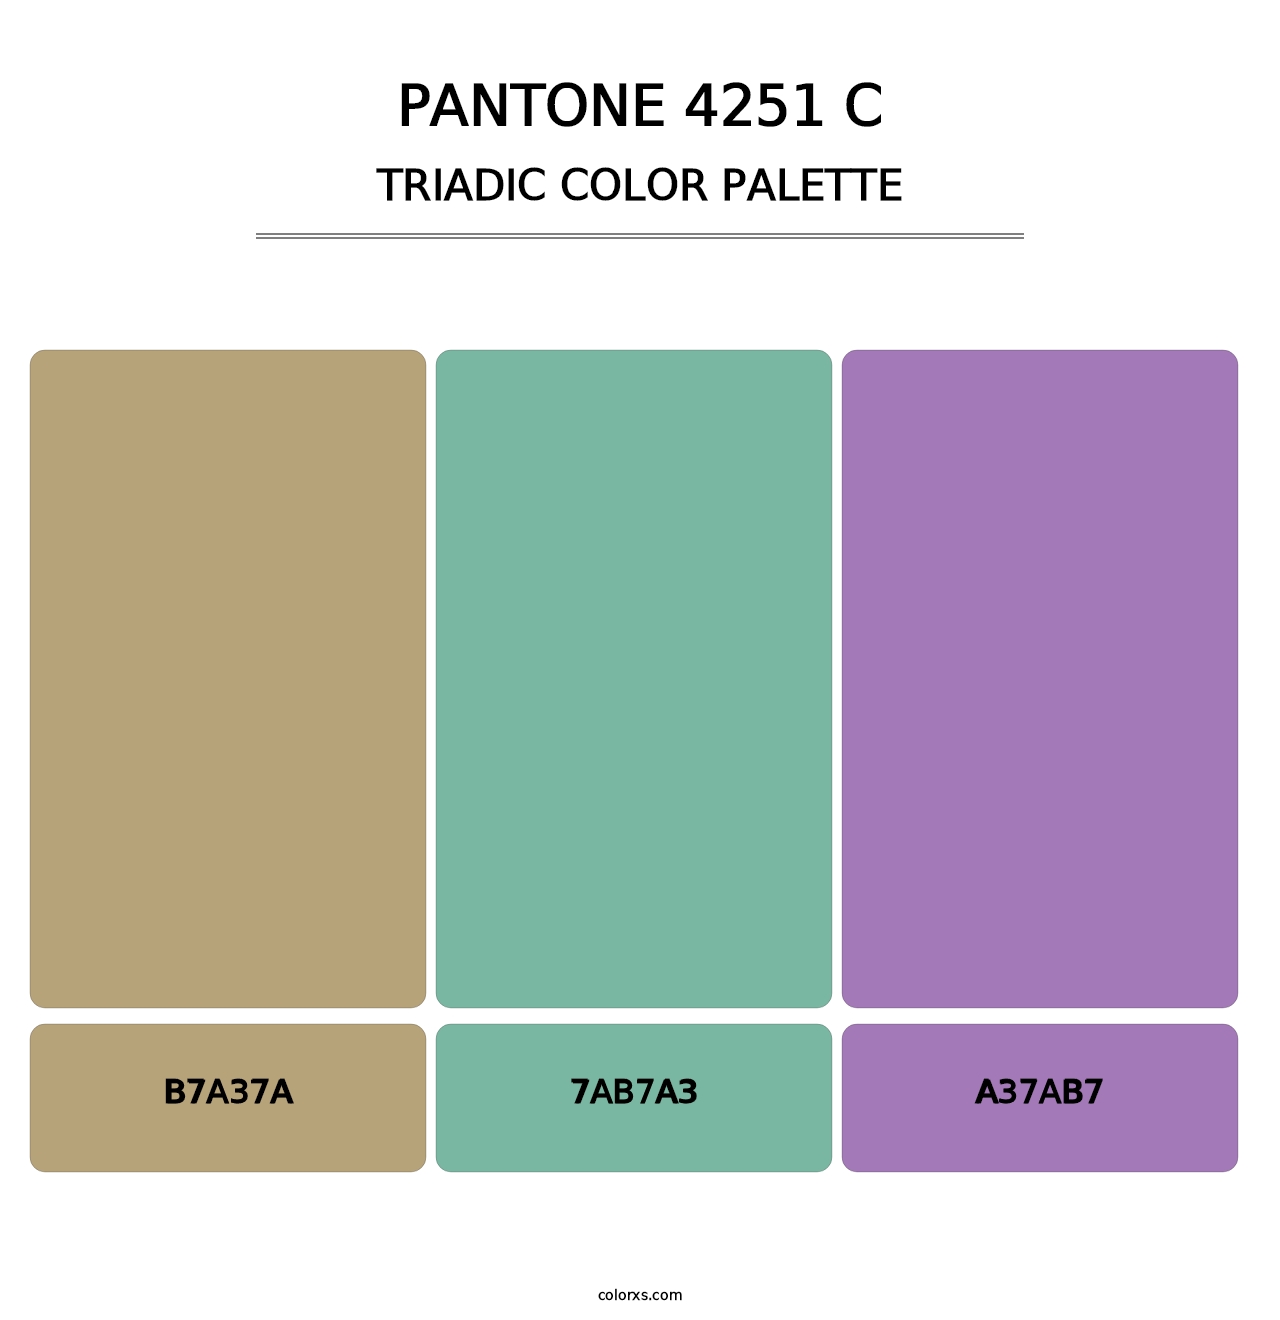 PANTONE 4251 C - Triadic Color Palette